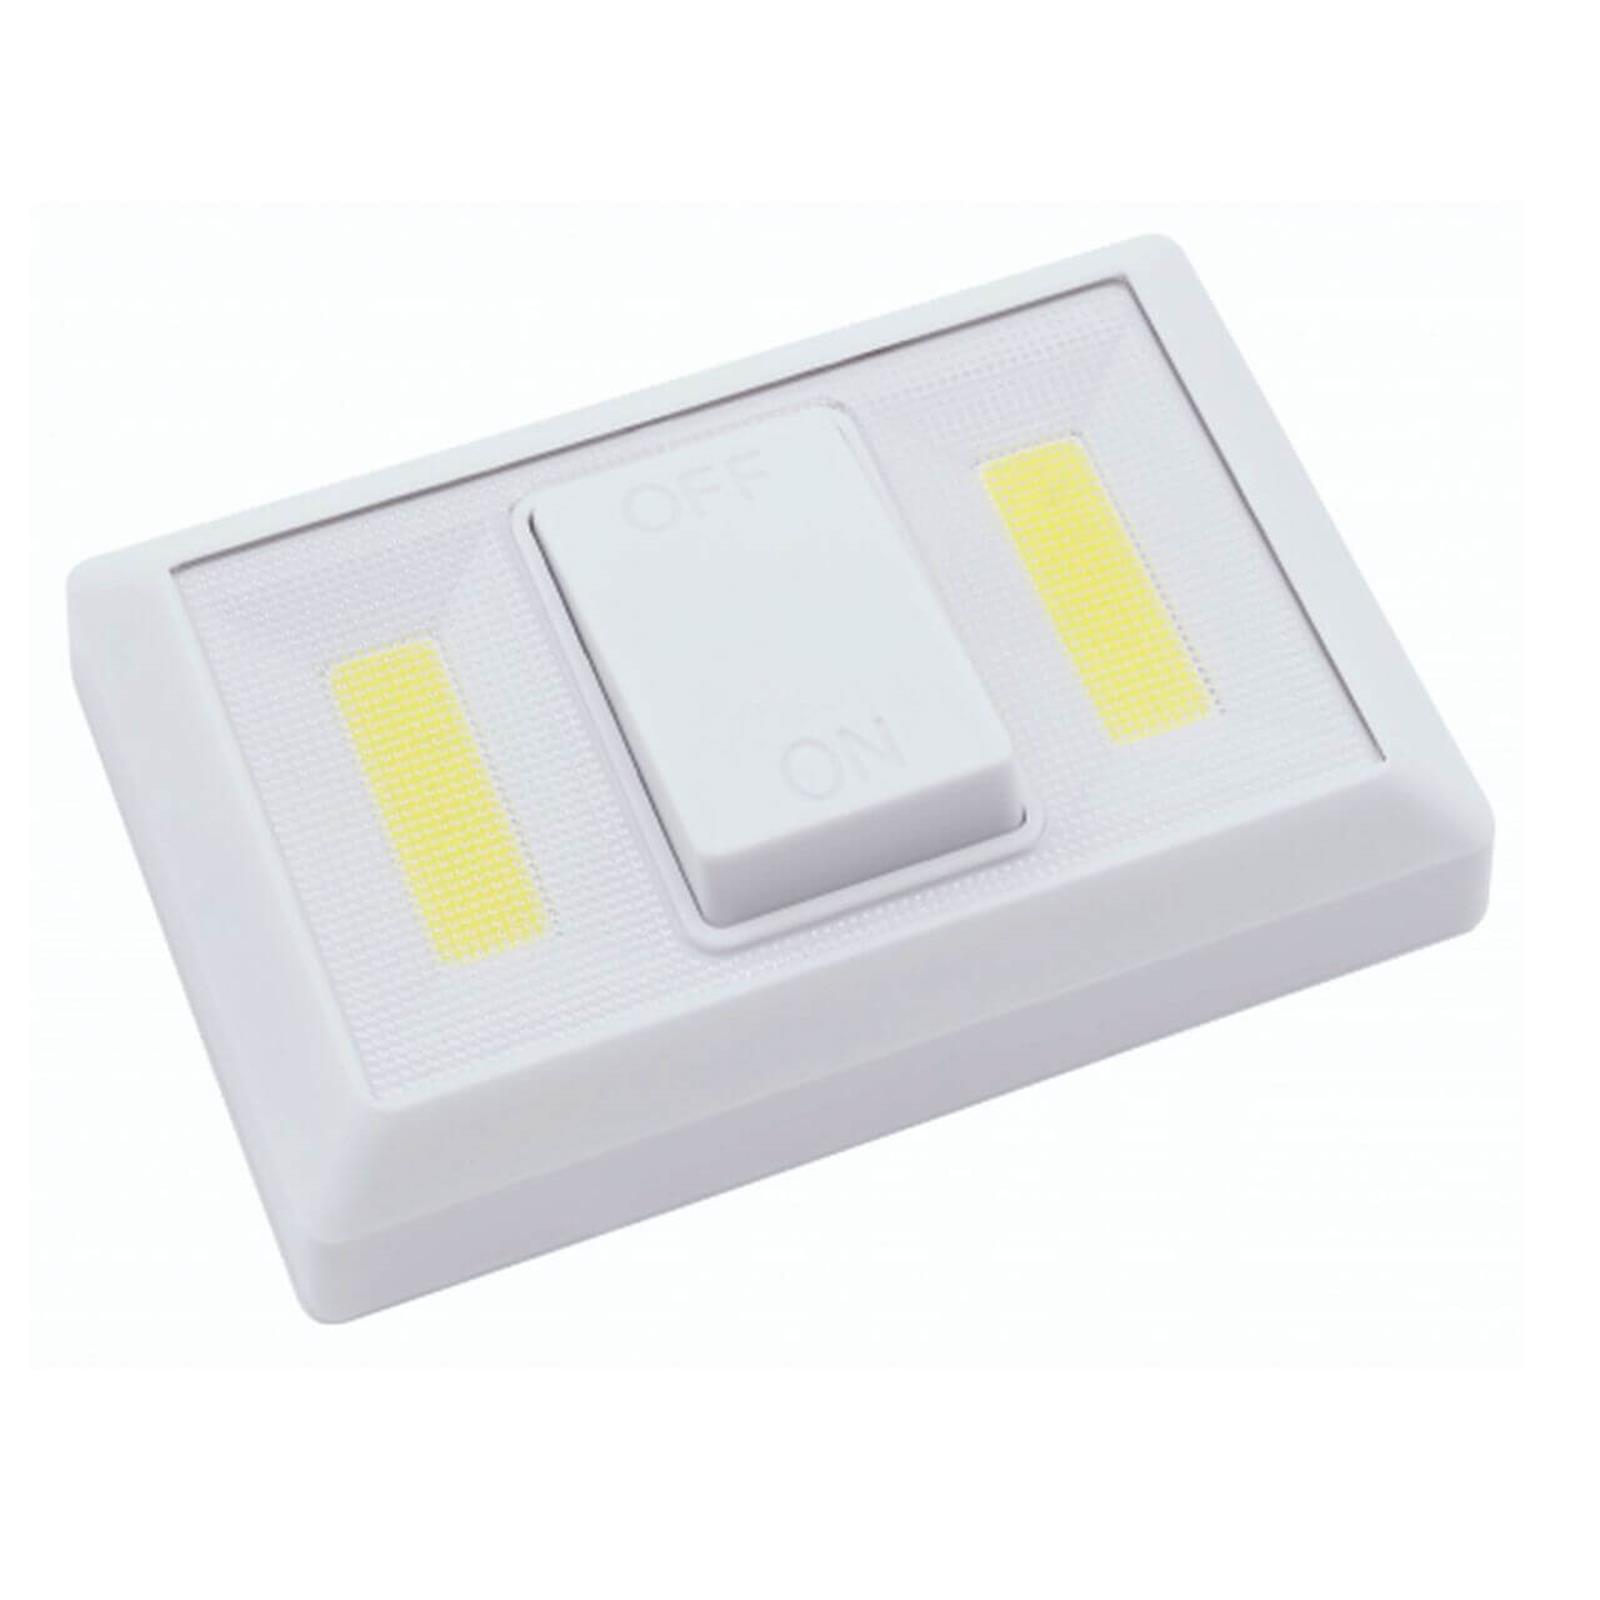 Helle LED Batterie Klebe-Leuchte mit Schalter batteriebetrieben